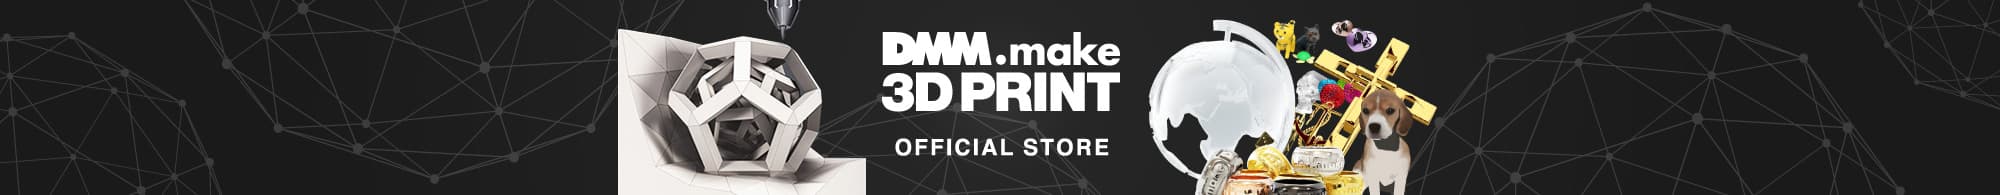 vntkg.make 3D PRINT official store